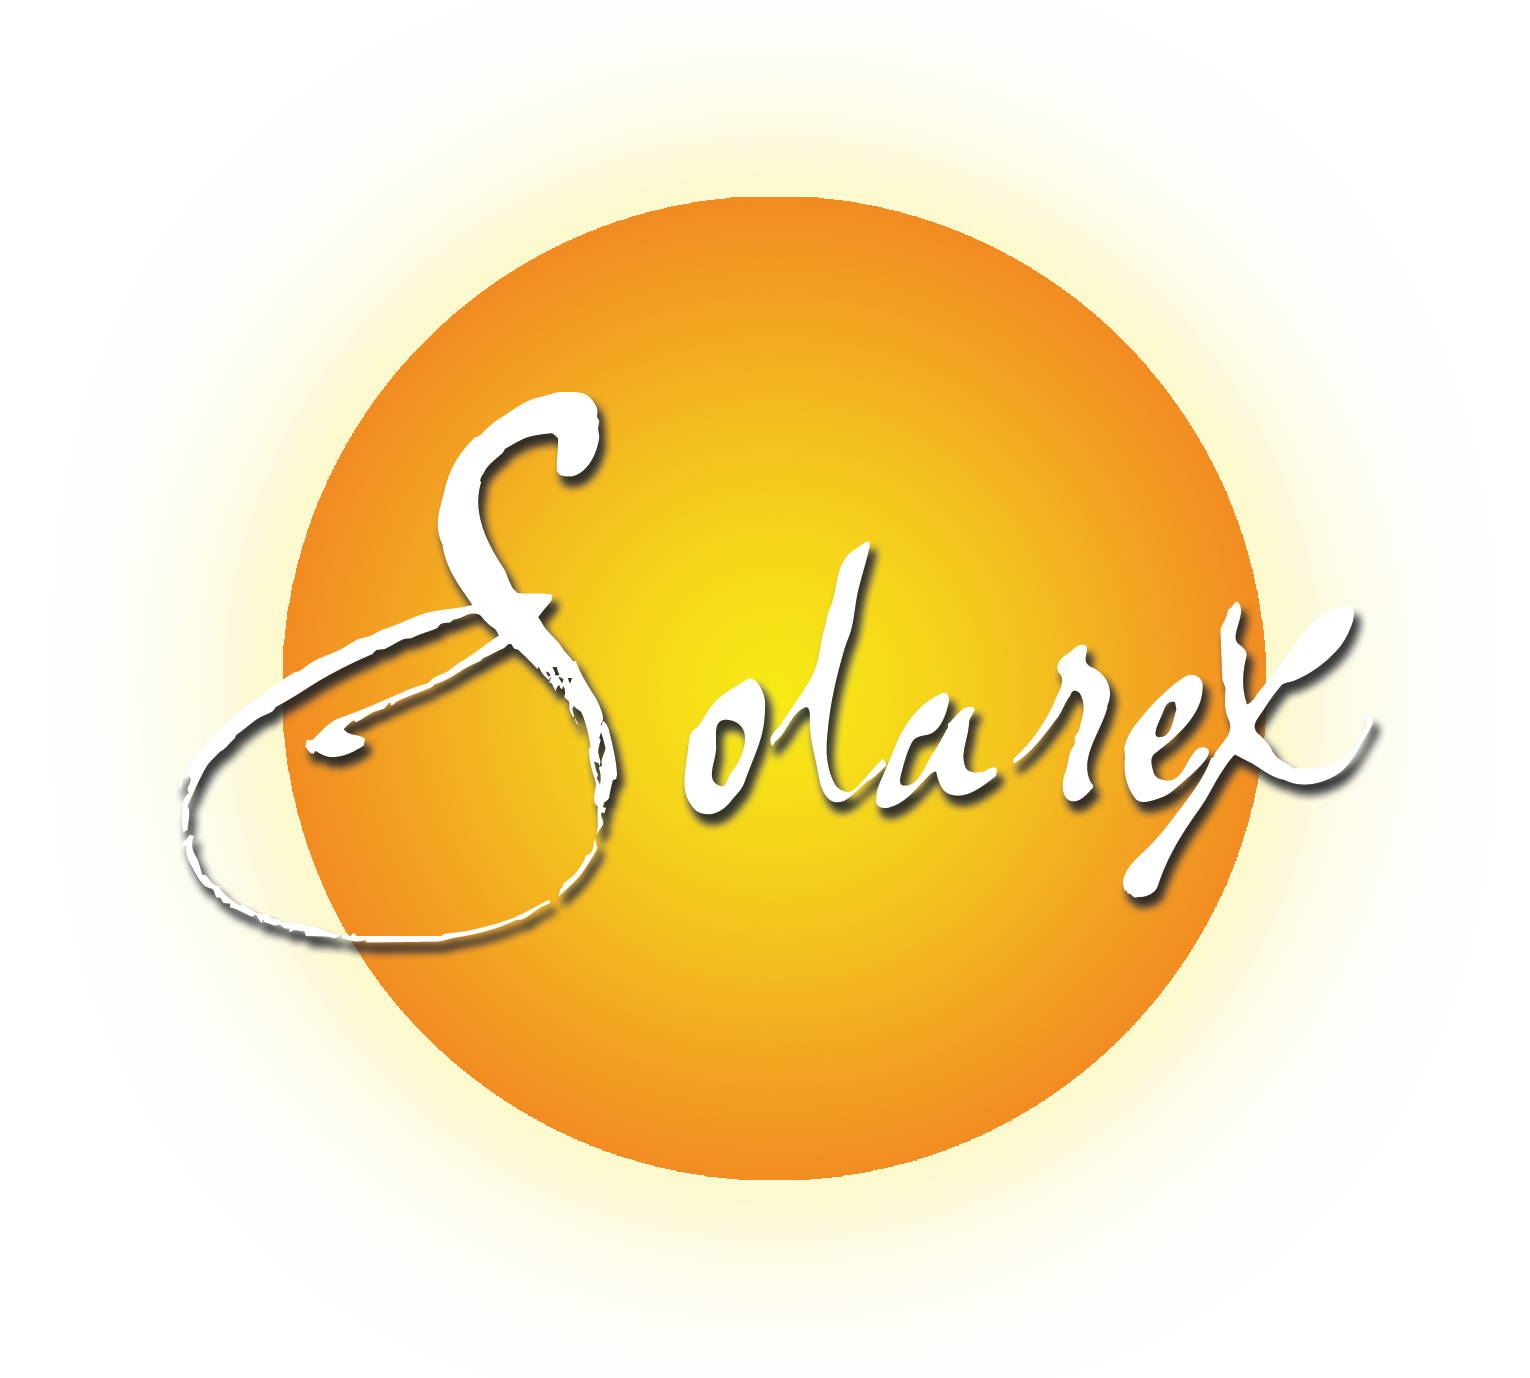 Solarex Imaging